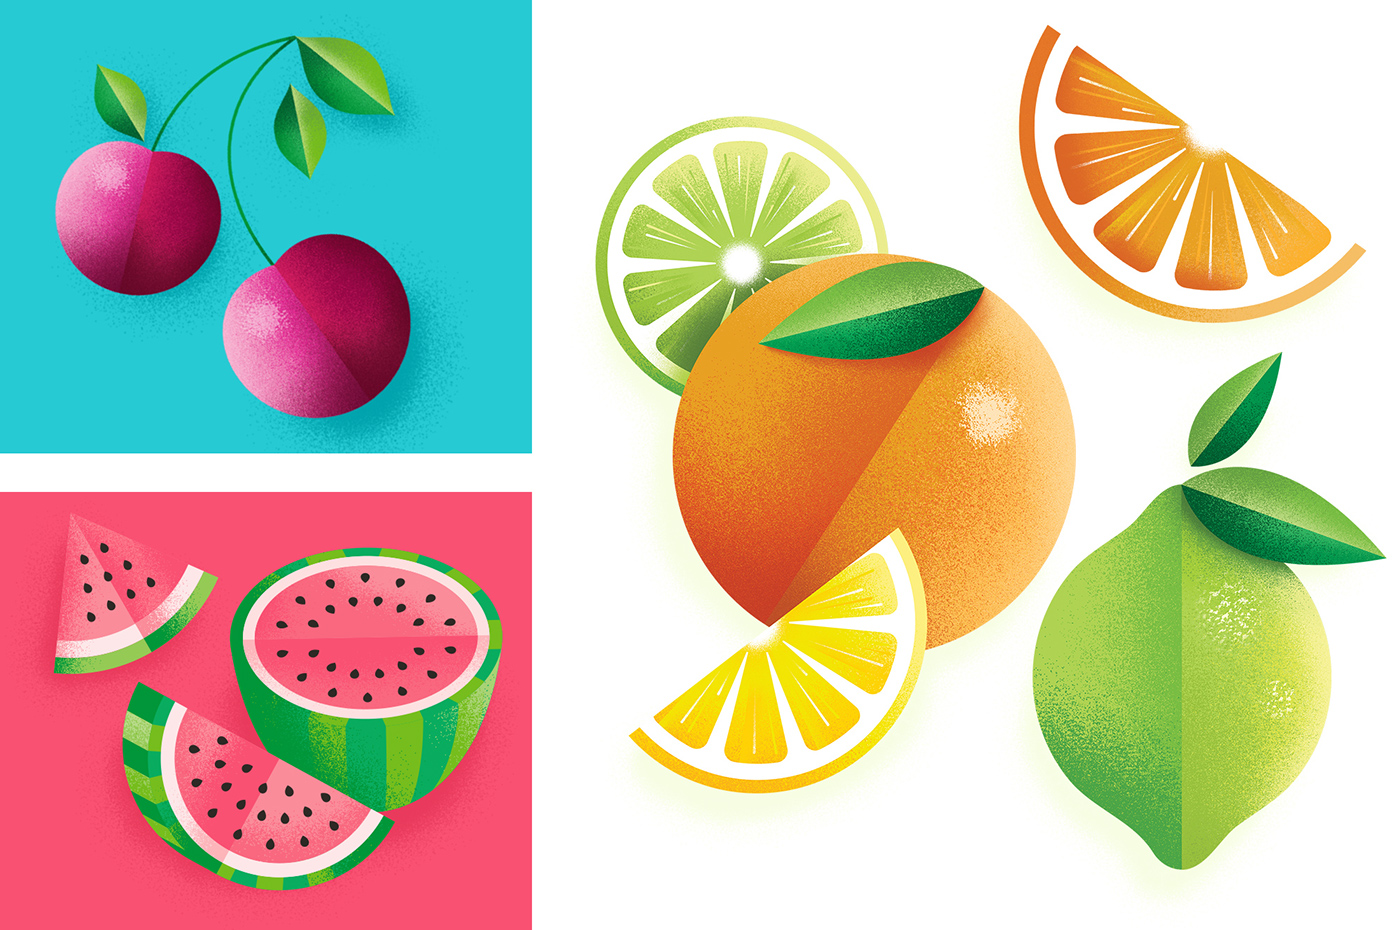 target Packaging package design  cans Fruit ILLUSTRATION  beverage texture branding 